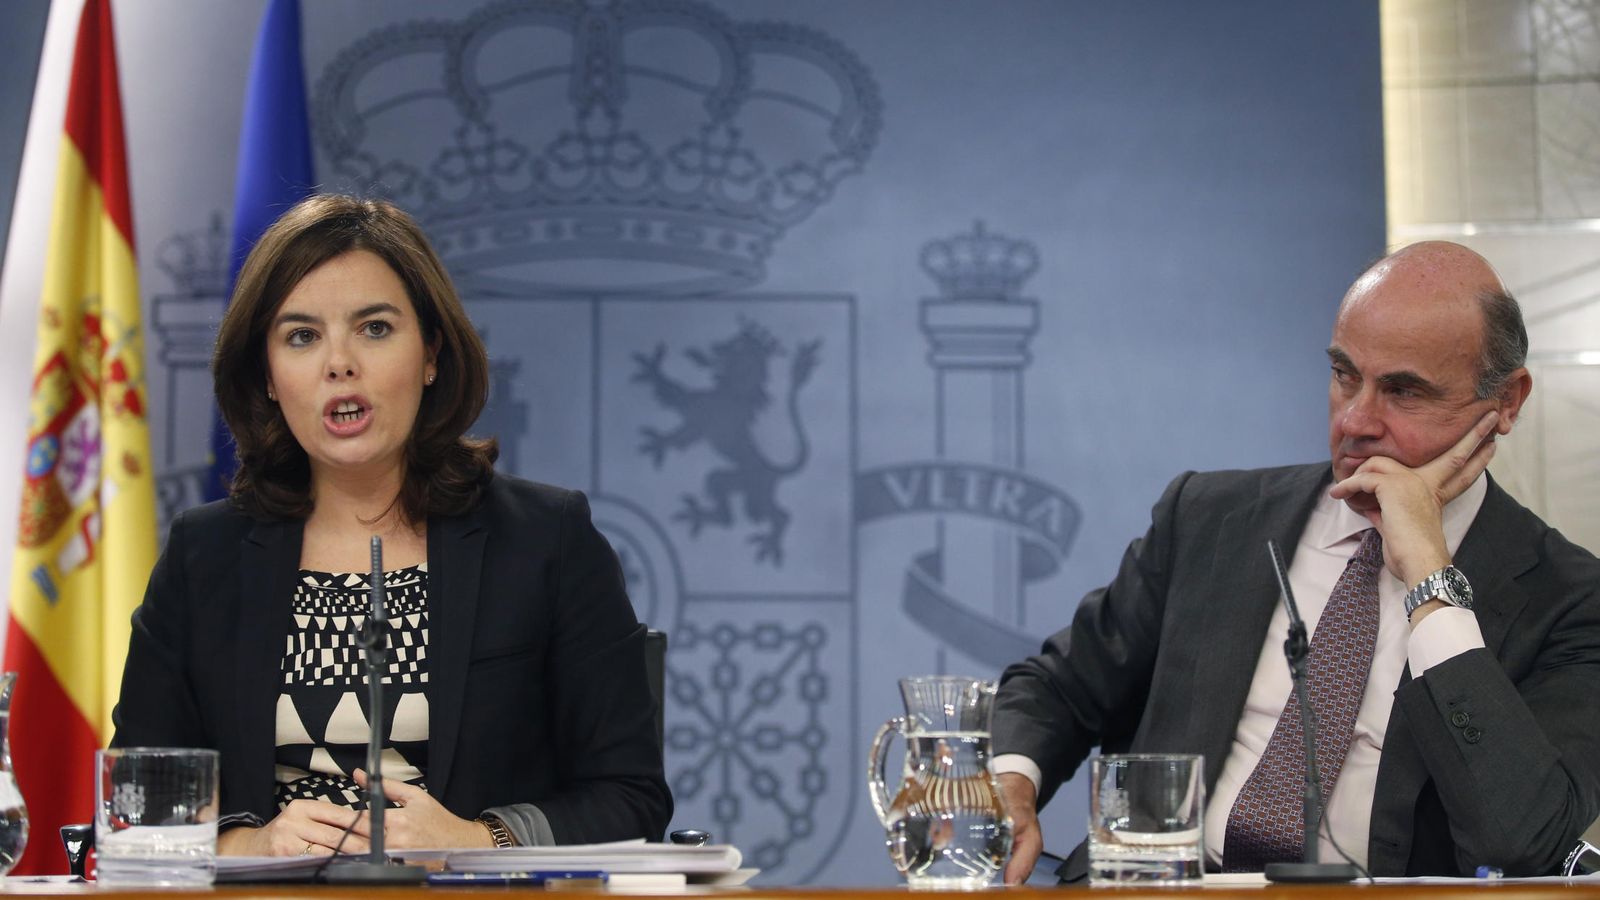 Foto: La vicepresidenta del Gobierno, Soraya Sáenz de Santamaría, y el ministro de Economía y Competitividad, Luis de Guindos. (EFE)